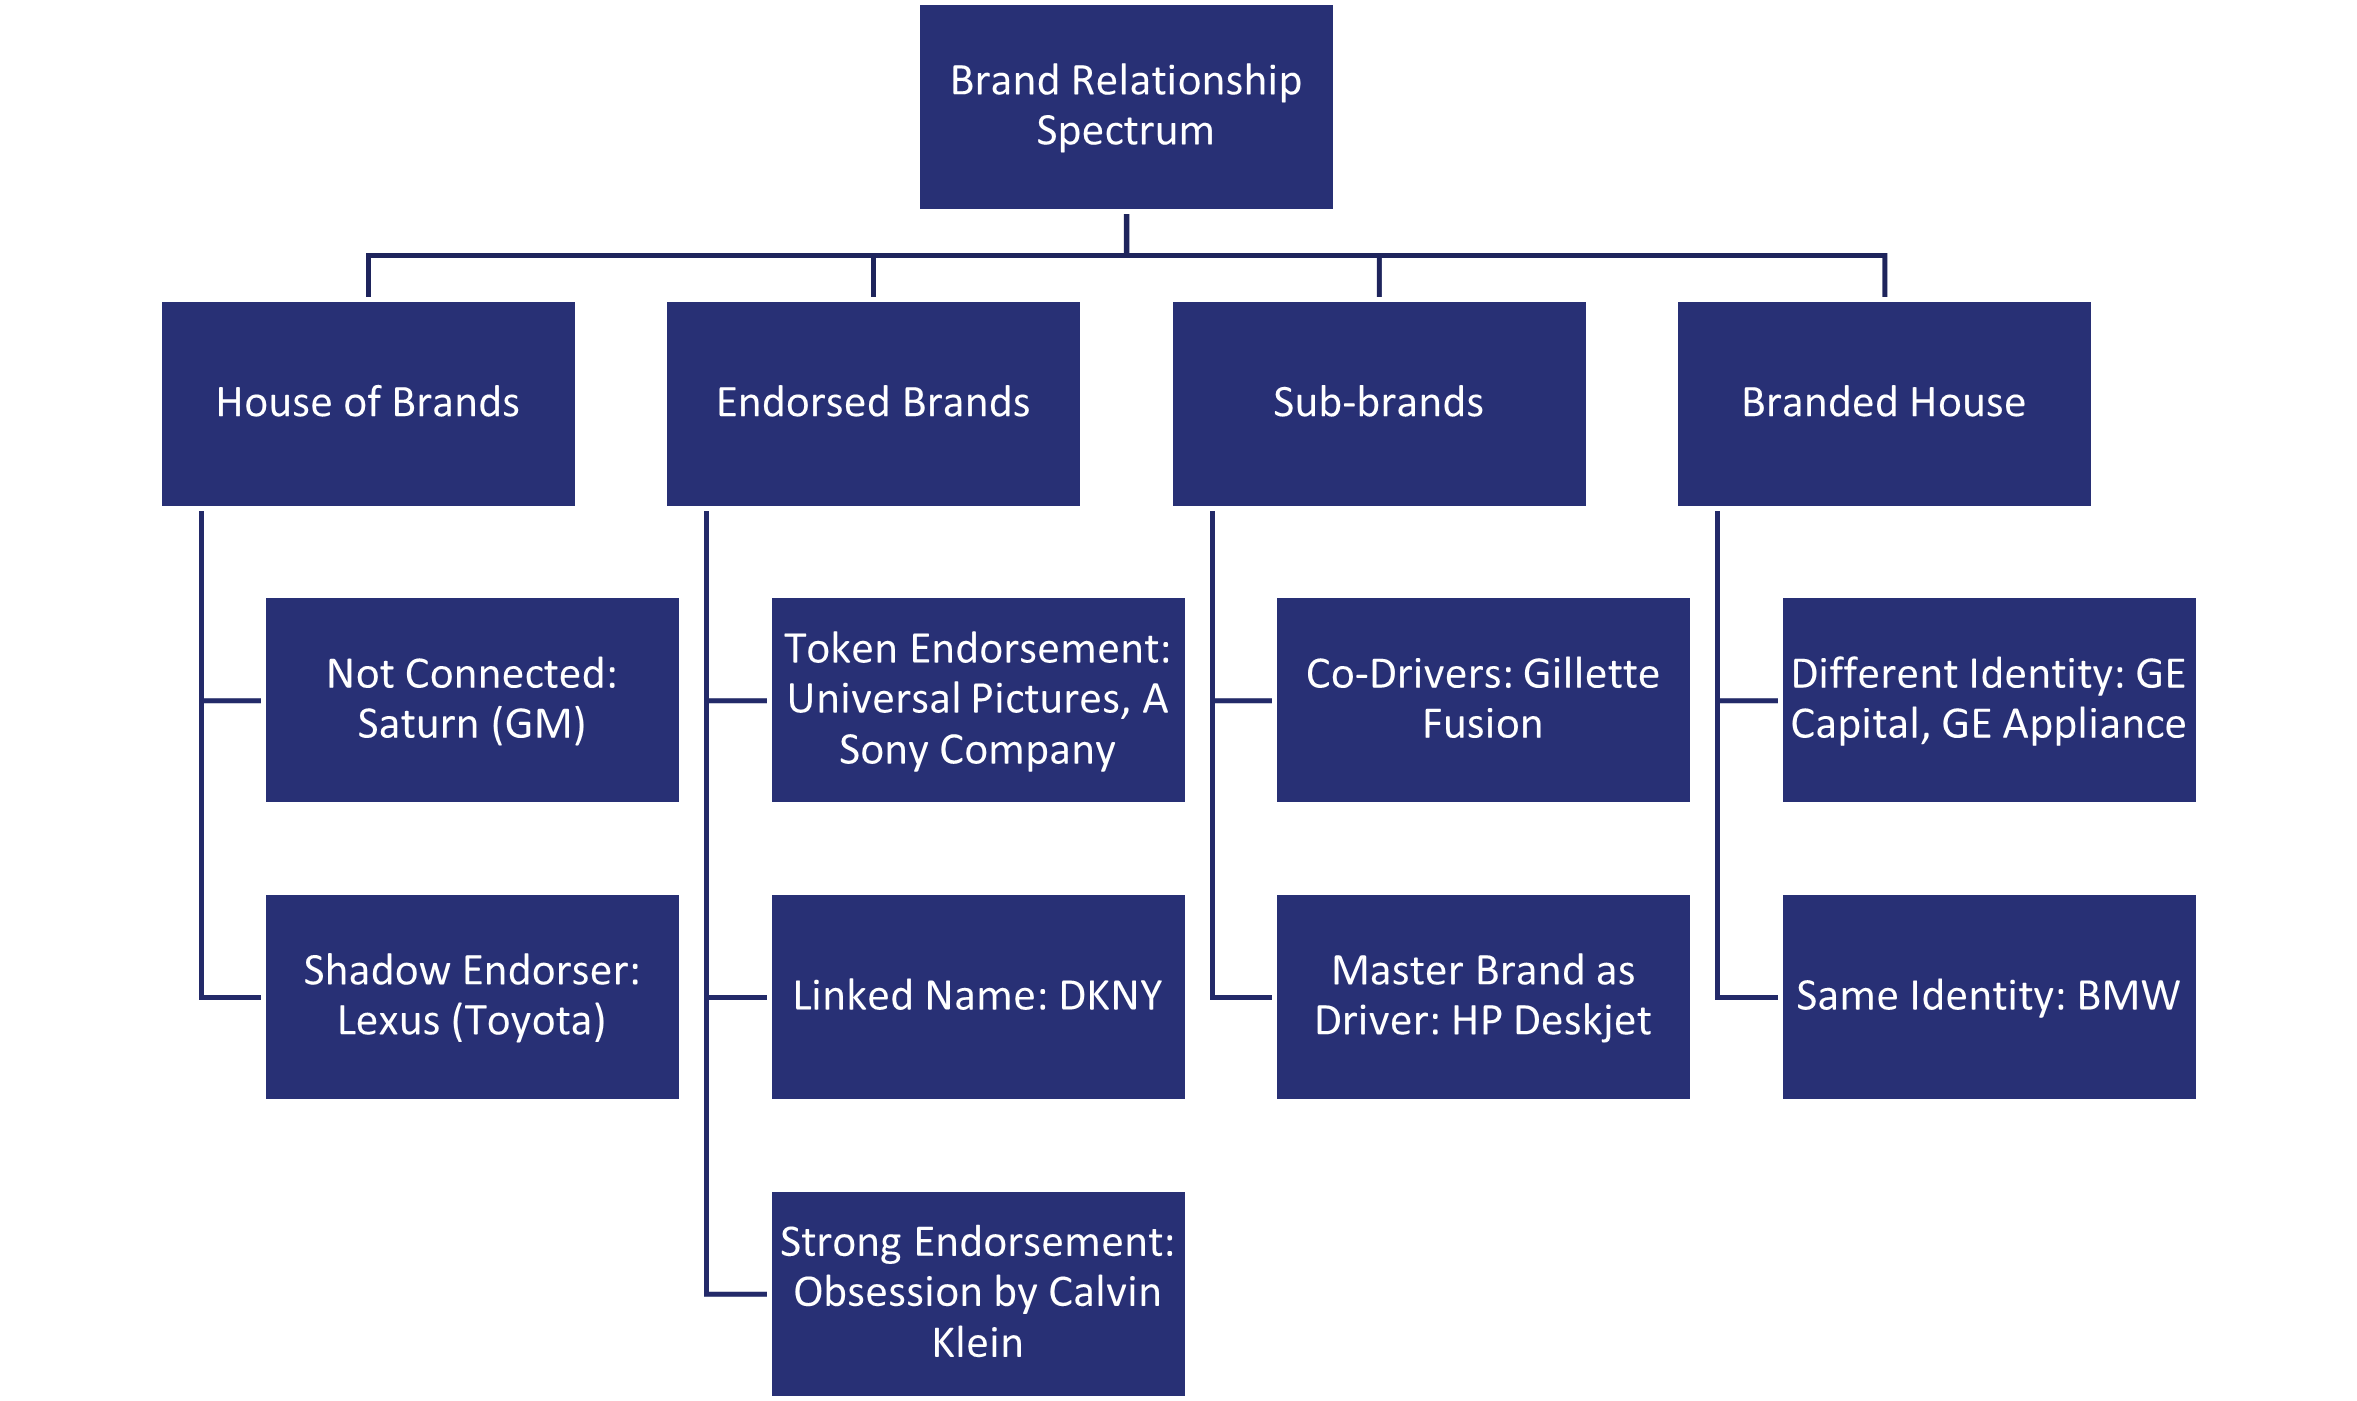 Figure 1: Aaker's Brand Relationship Spectrum